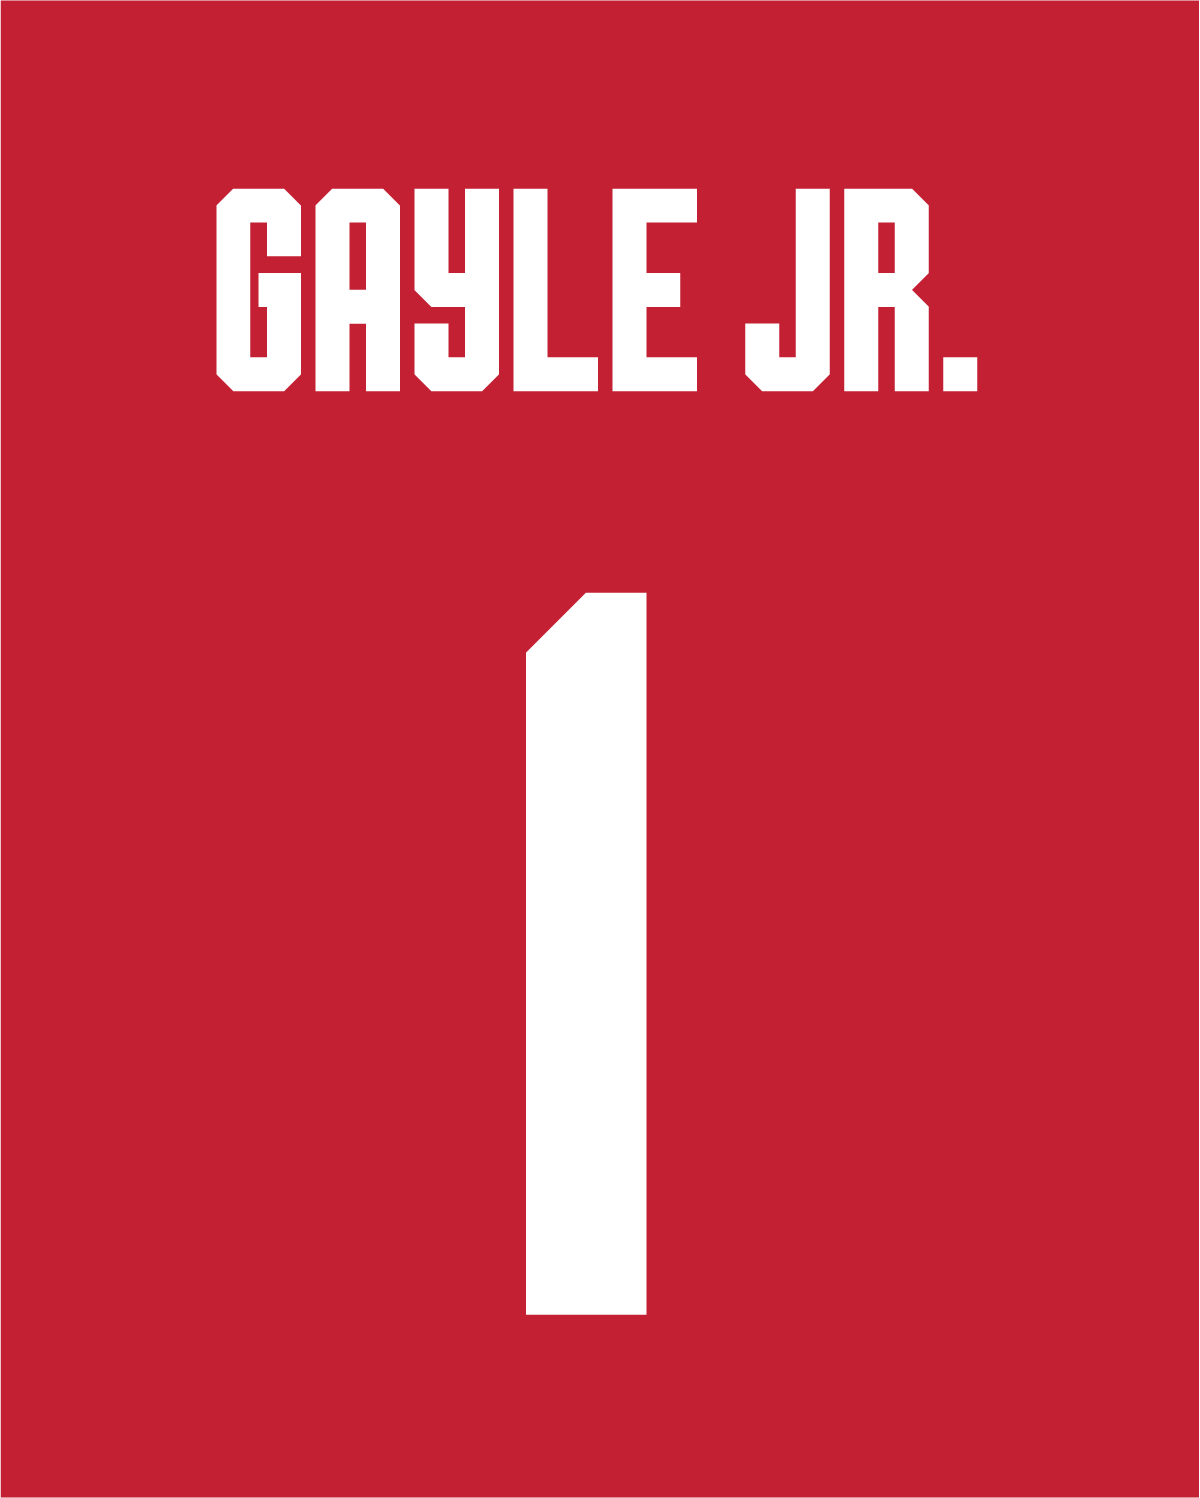 Roddy Gayle Jr. | #1